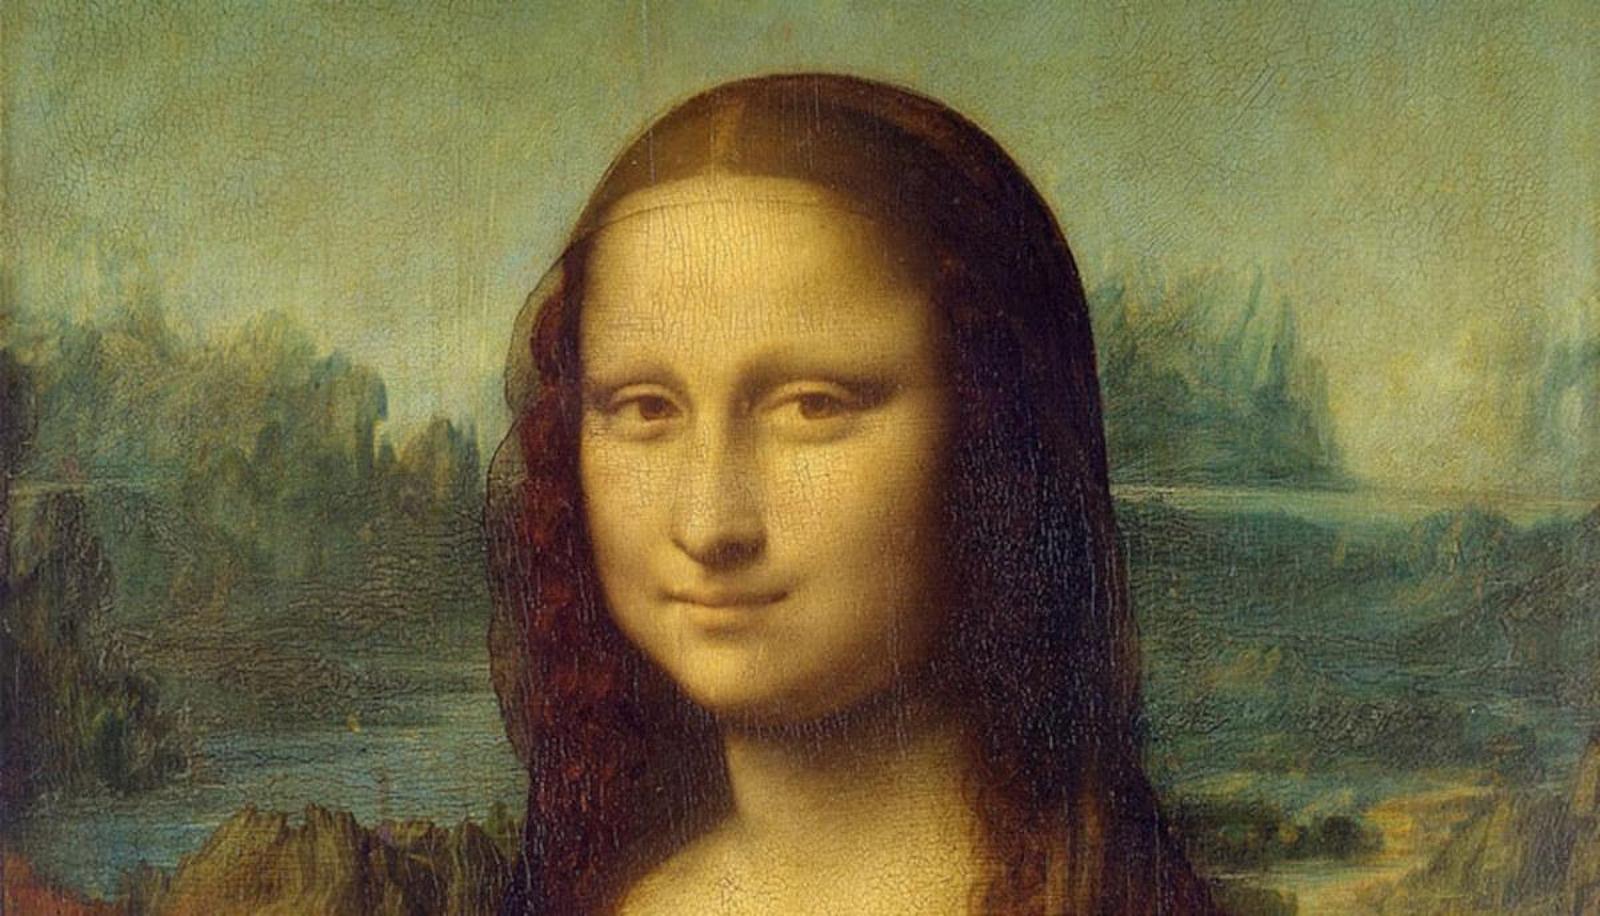 Gioconda de Leonardo da Vinci